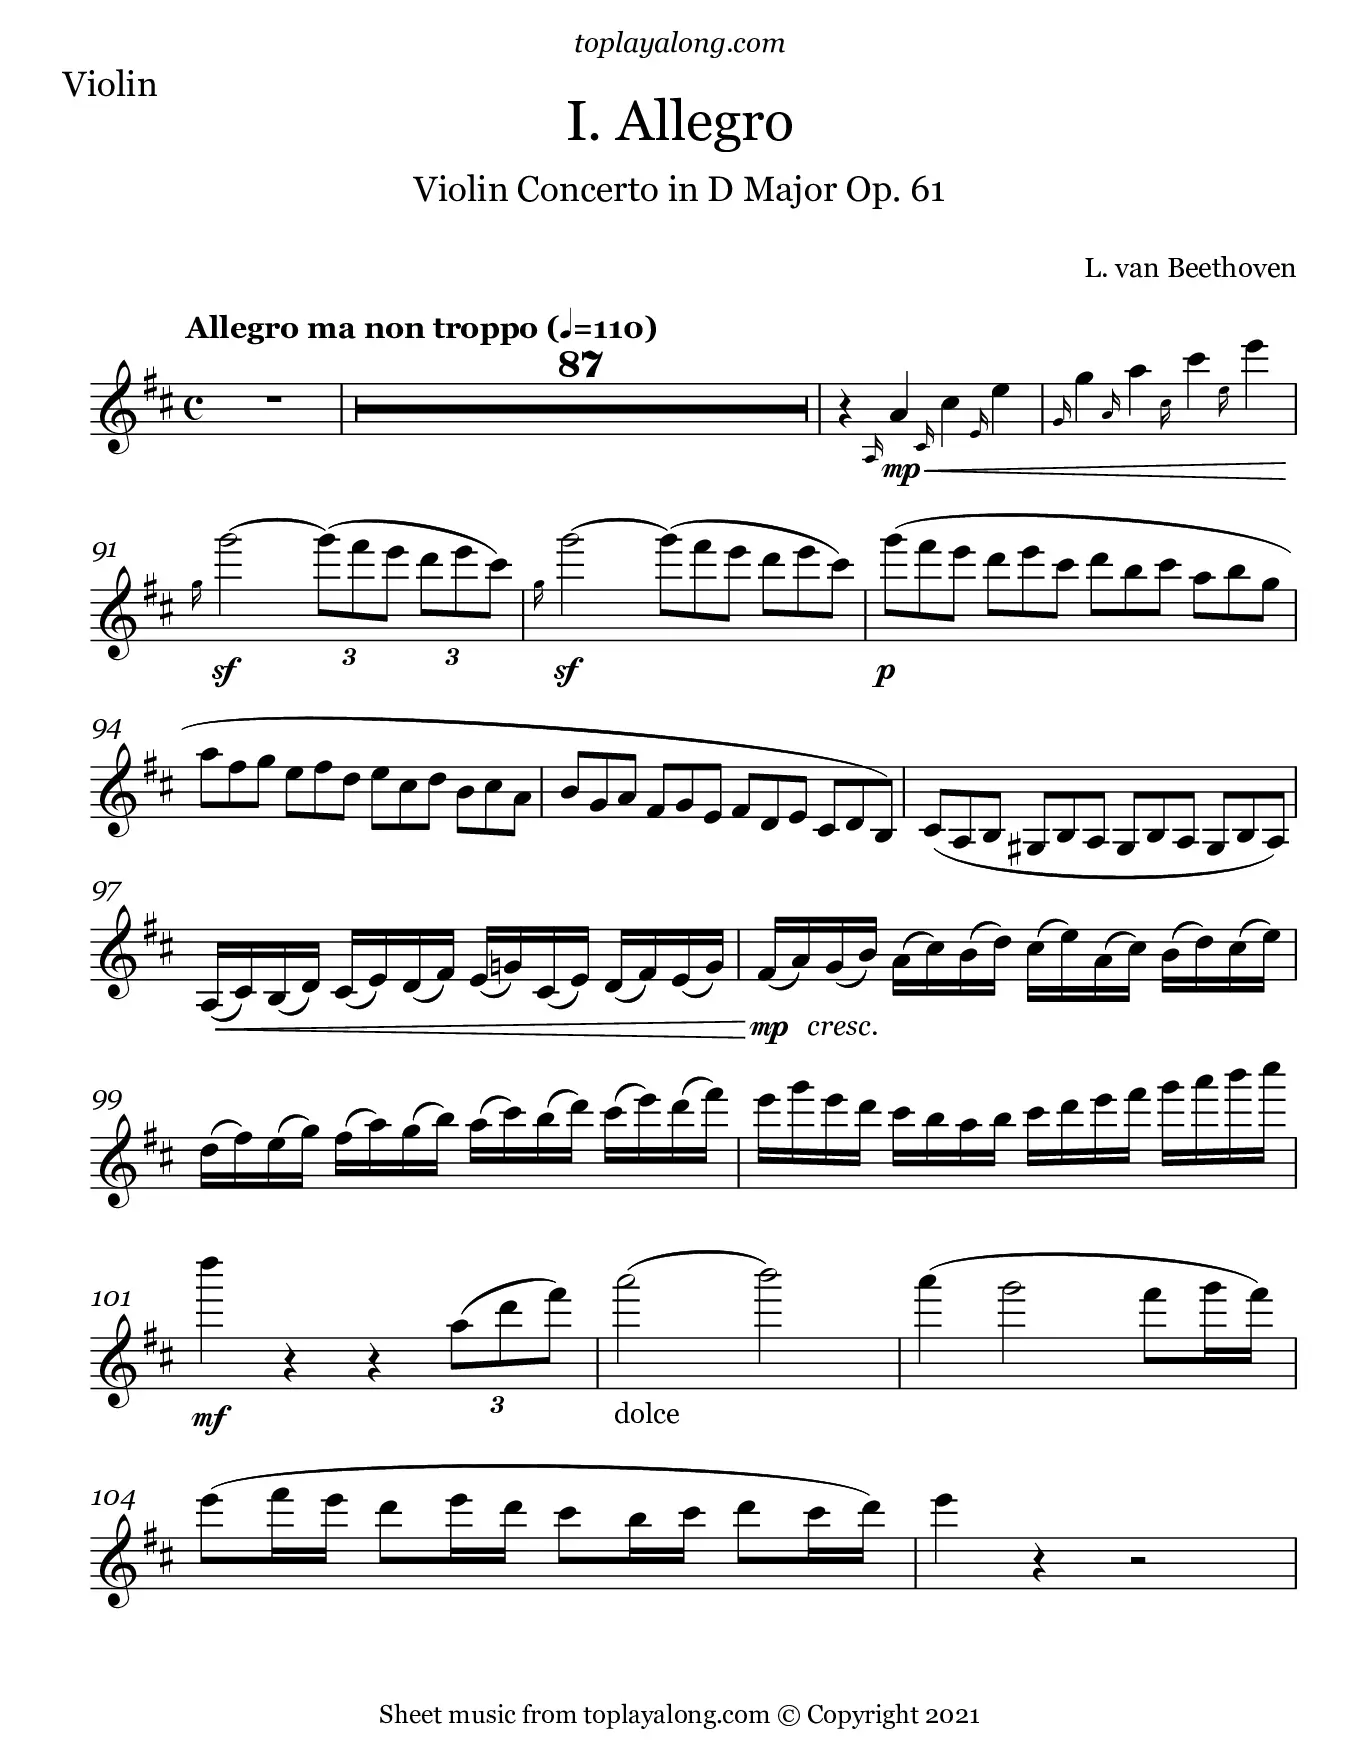 beethoven violin concerto imslp - Did Beethoven write a cadenza for his violin concerto